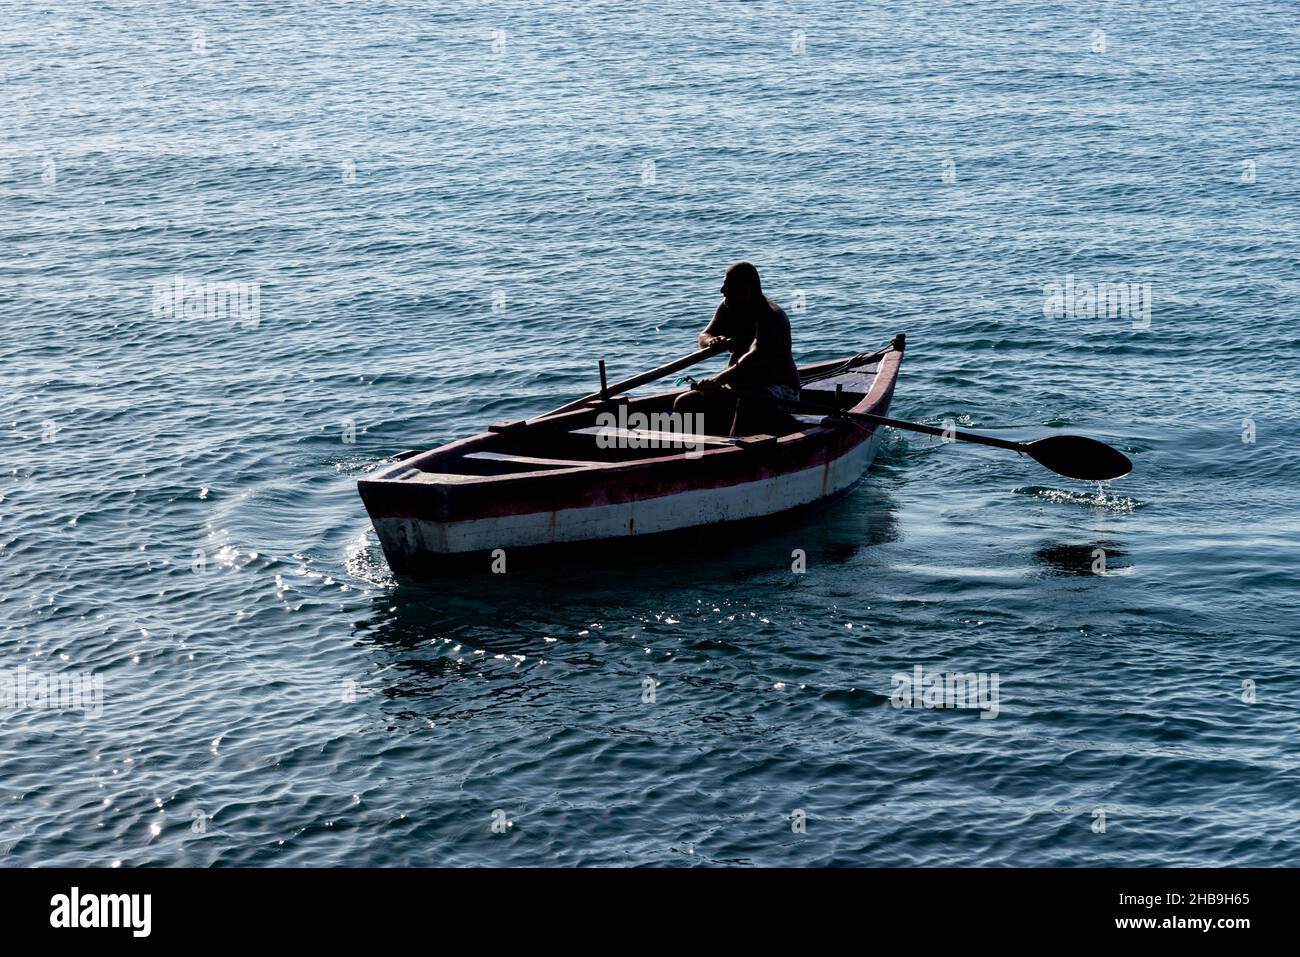 Salvador, Bahia, Brazil - Novembro 12, 2021: Person rowing a boat at sea. Salvador, Bahia, Brazil. Stock Photo